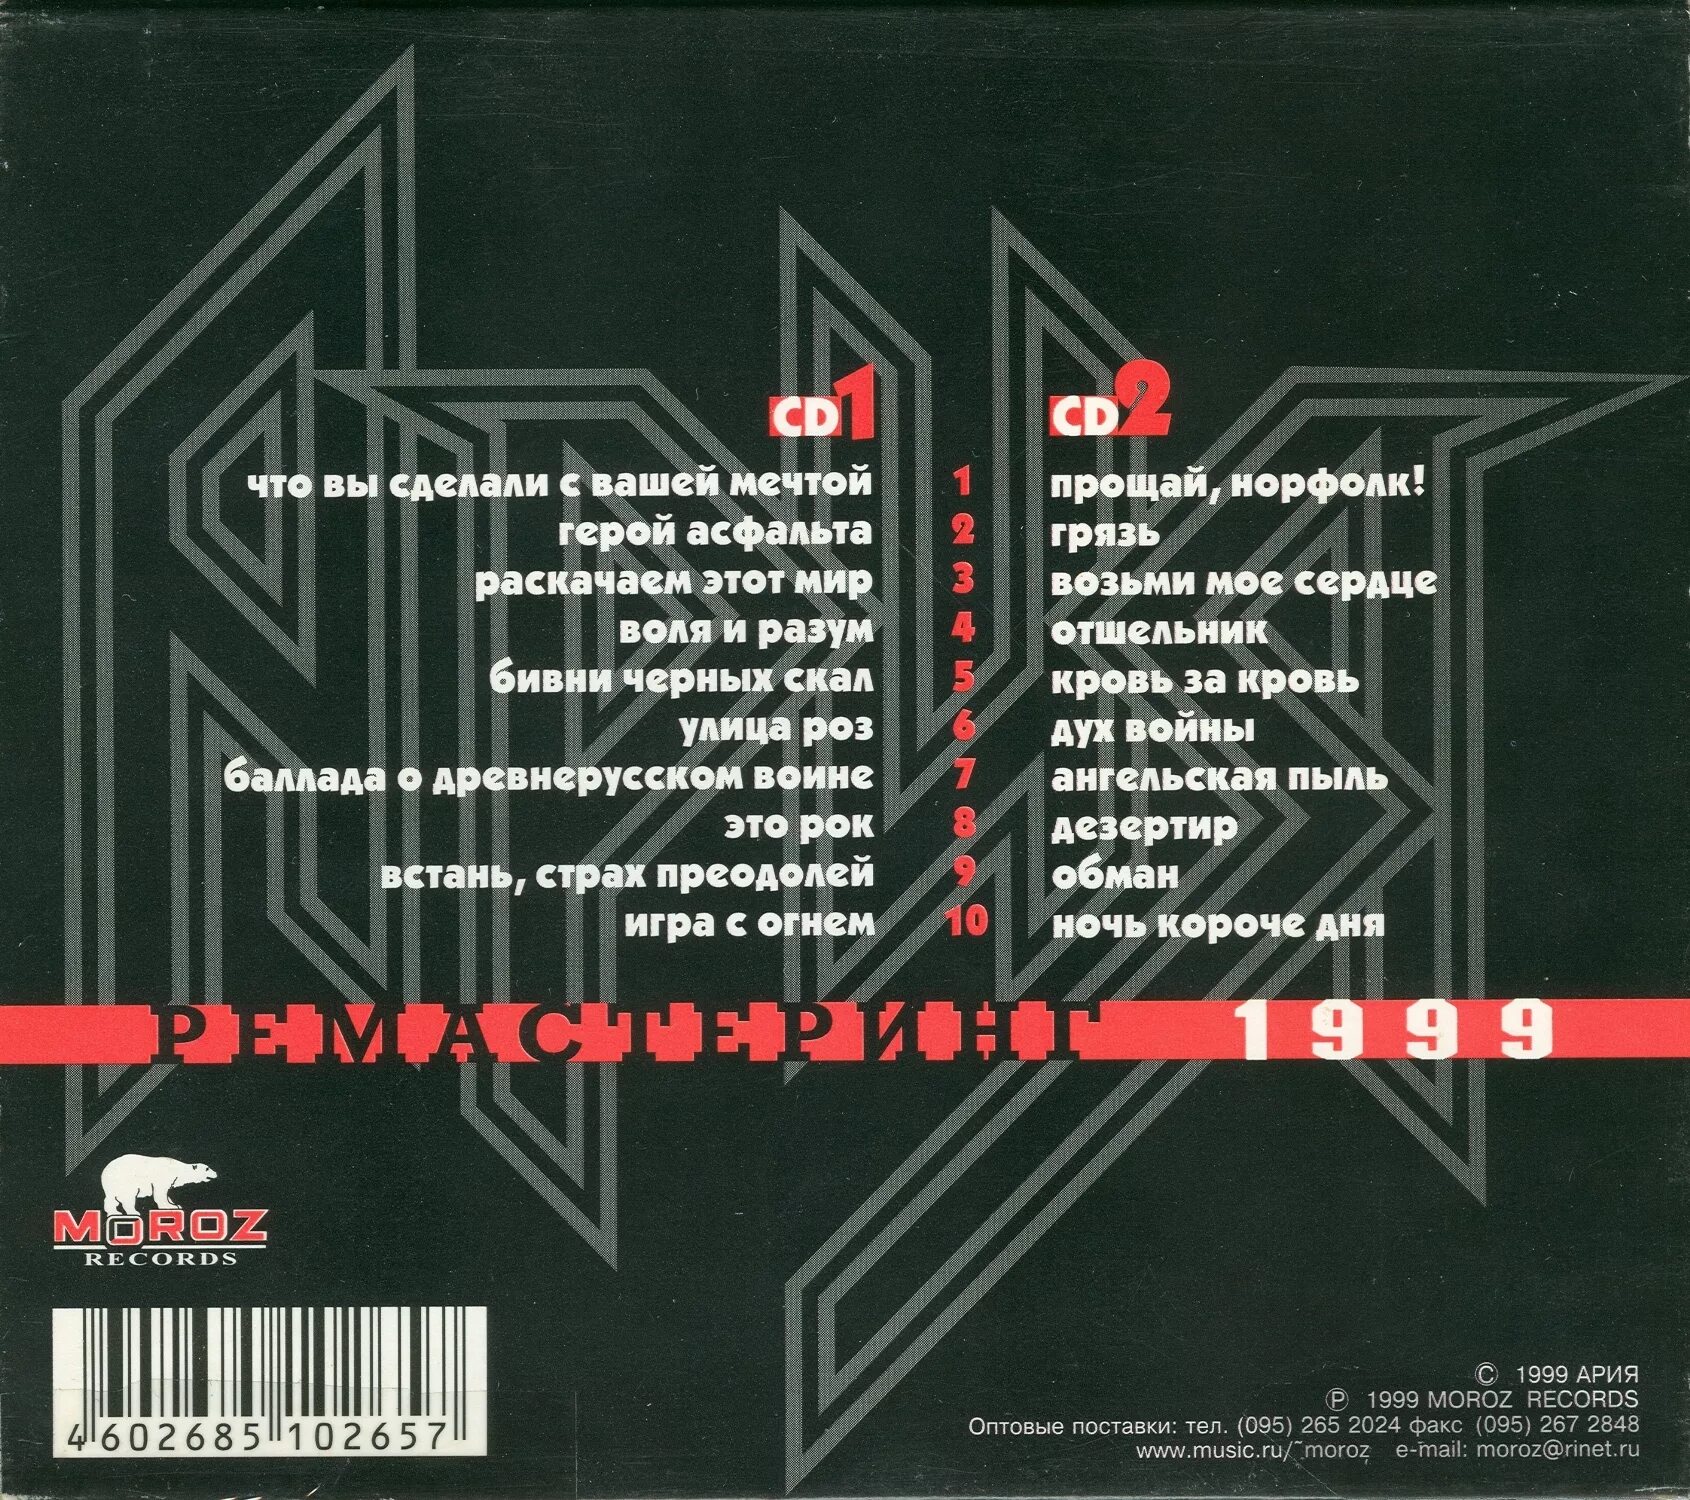 Ария. Ария лучшие песни 1999. Группа Ария 1999. Сборники 1999 года русские.